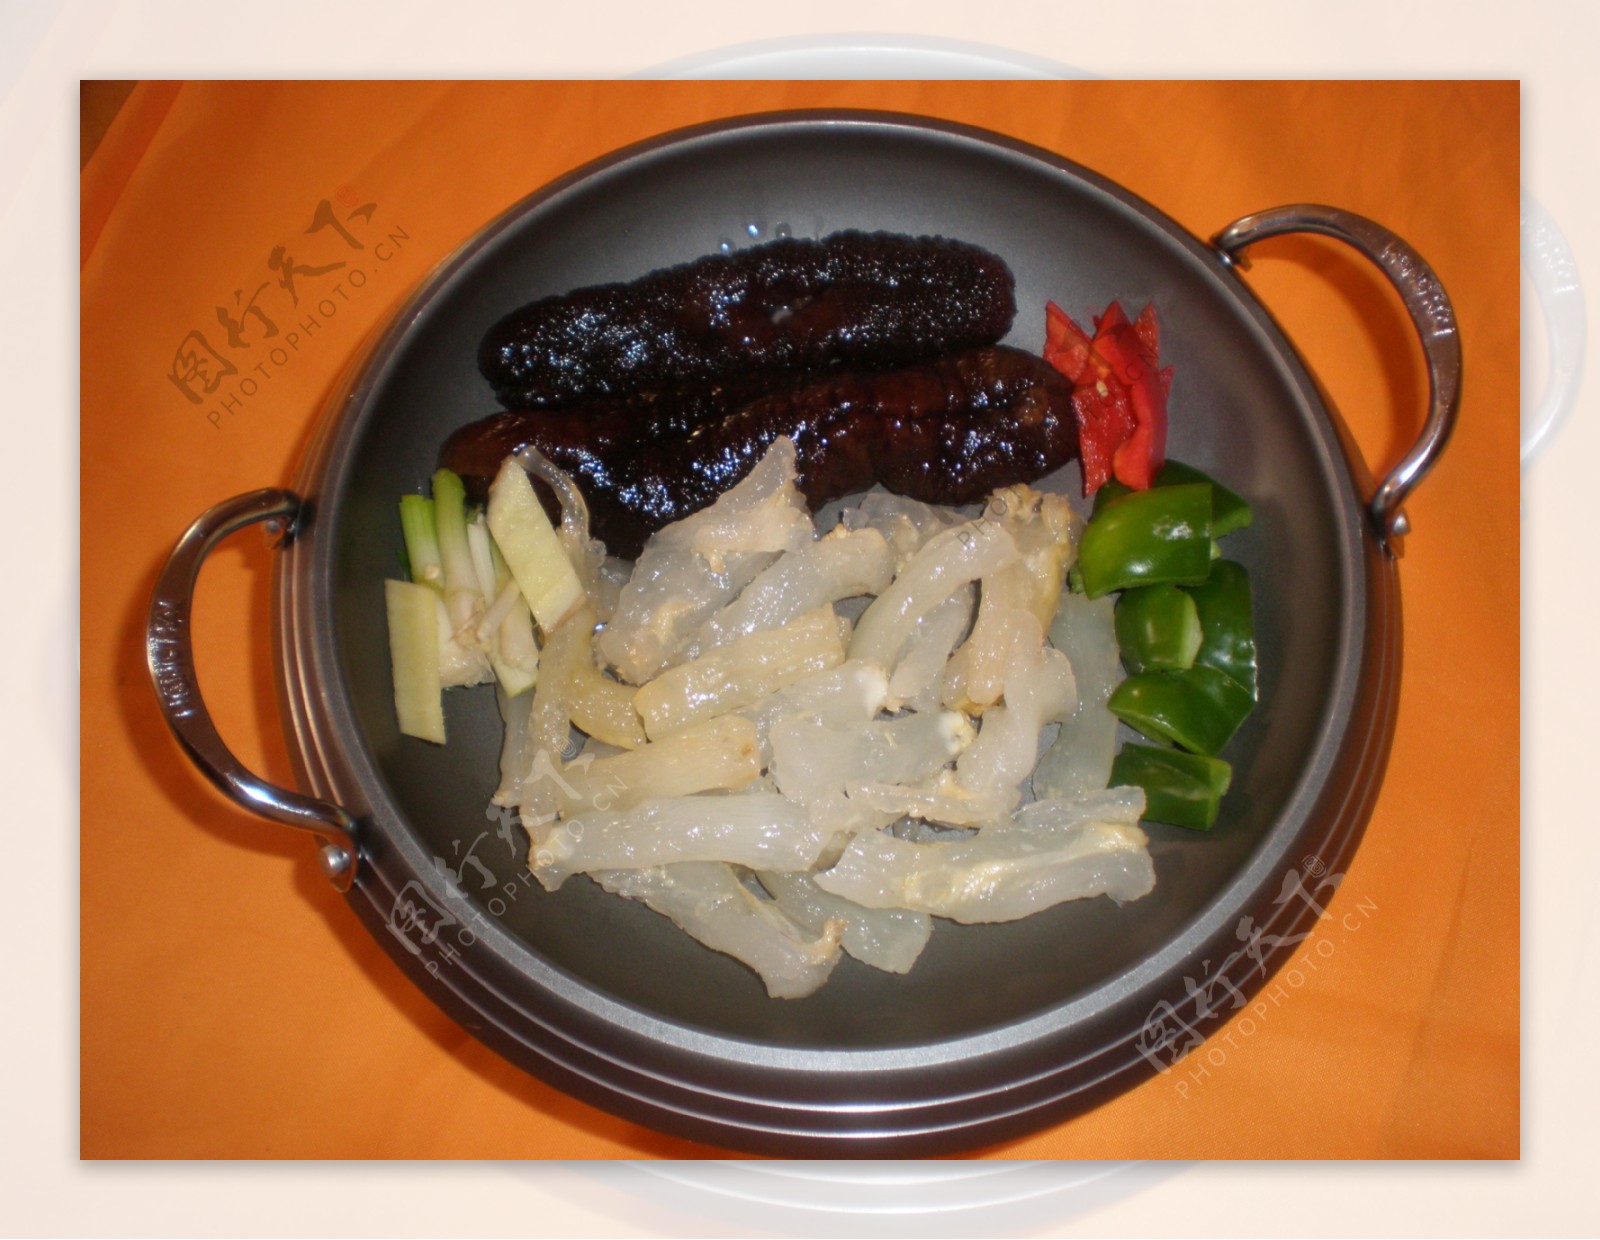 干锅香肠海蜇头图片